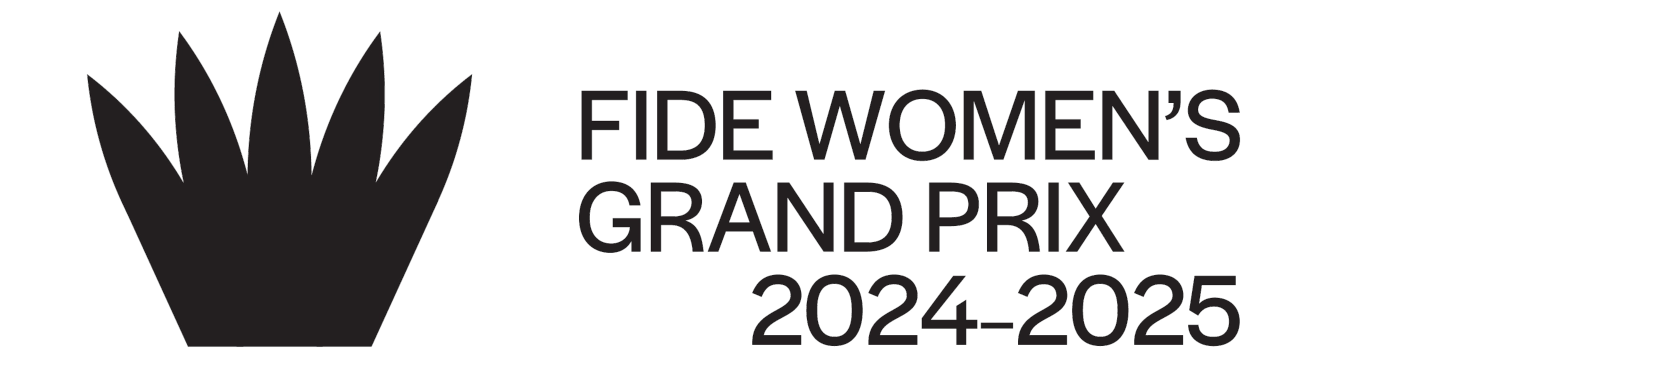 FIDE GRAND PRIX 2023